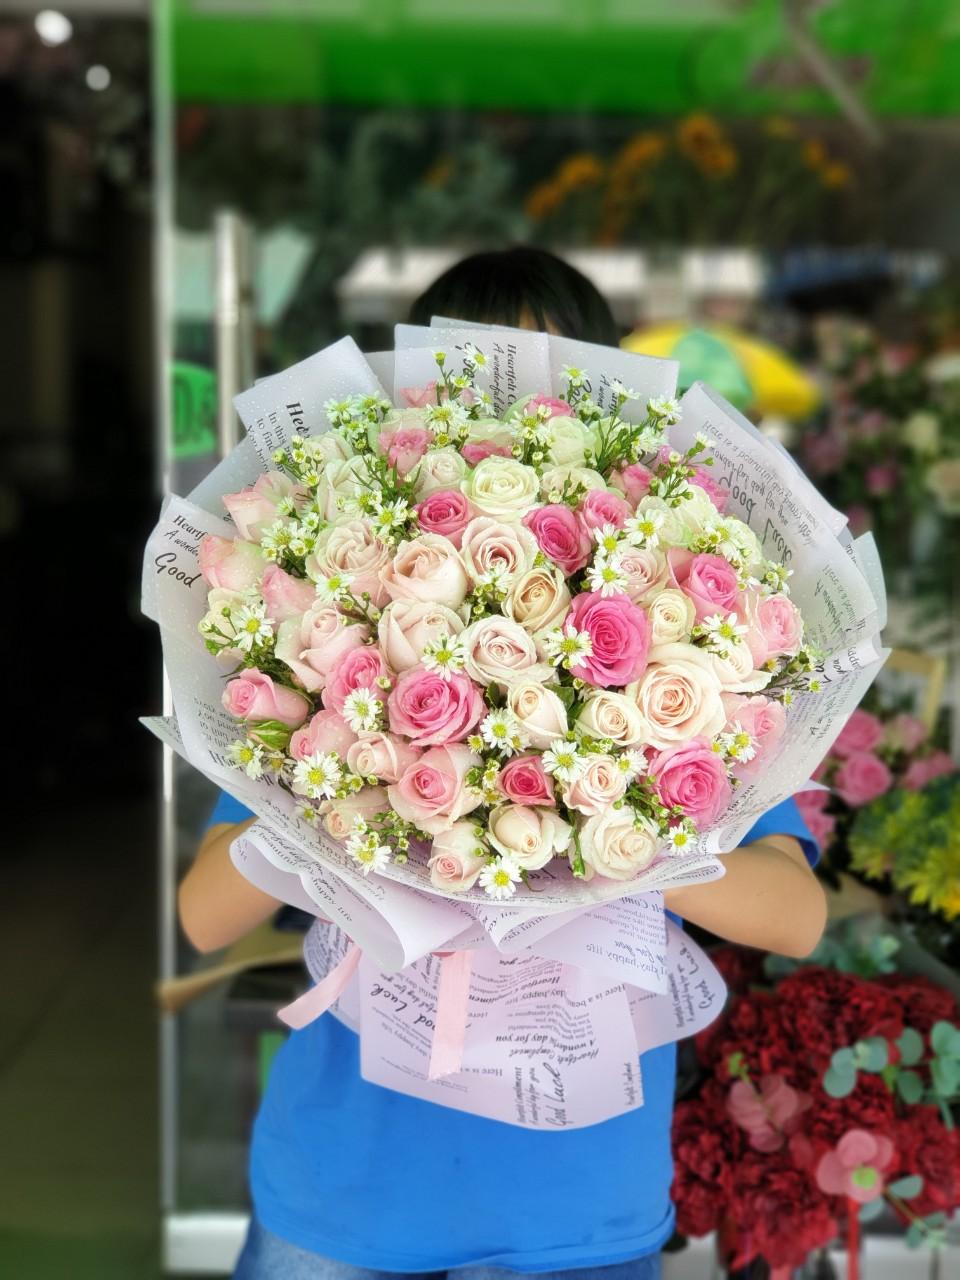 Shop hoa tươi quận Hoàn Kiếm